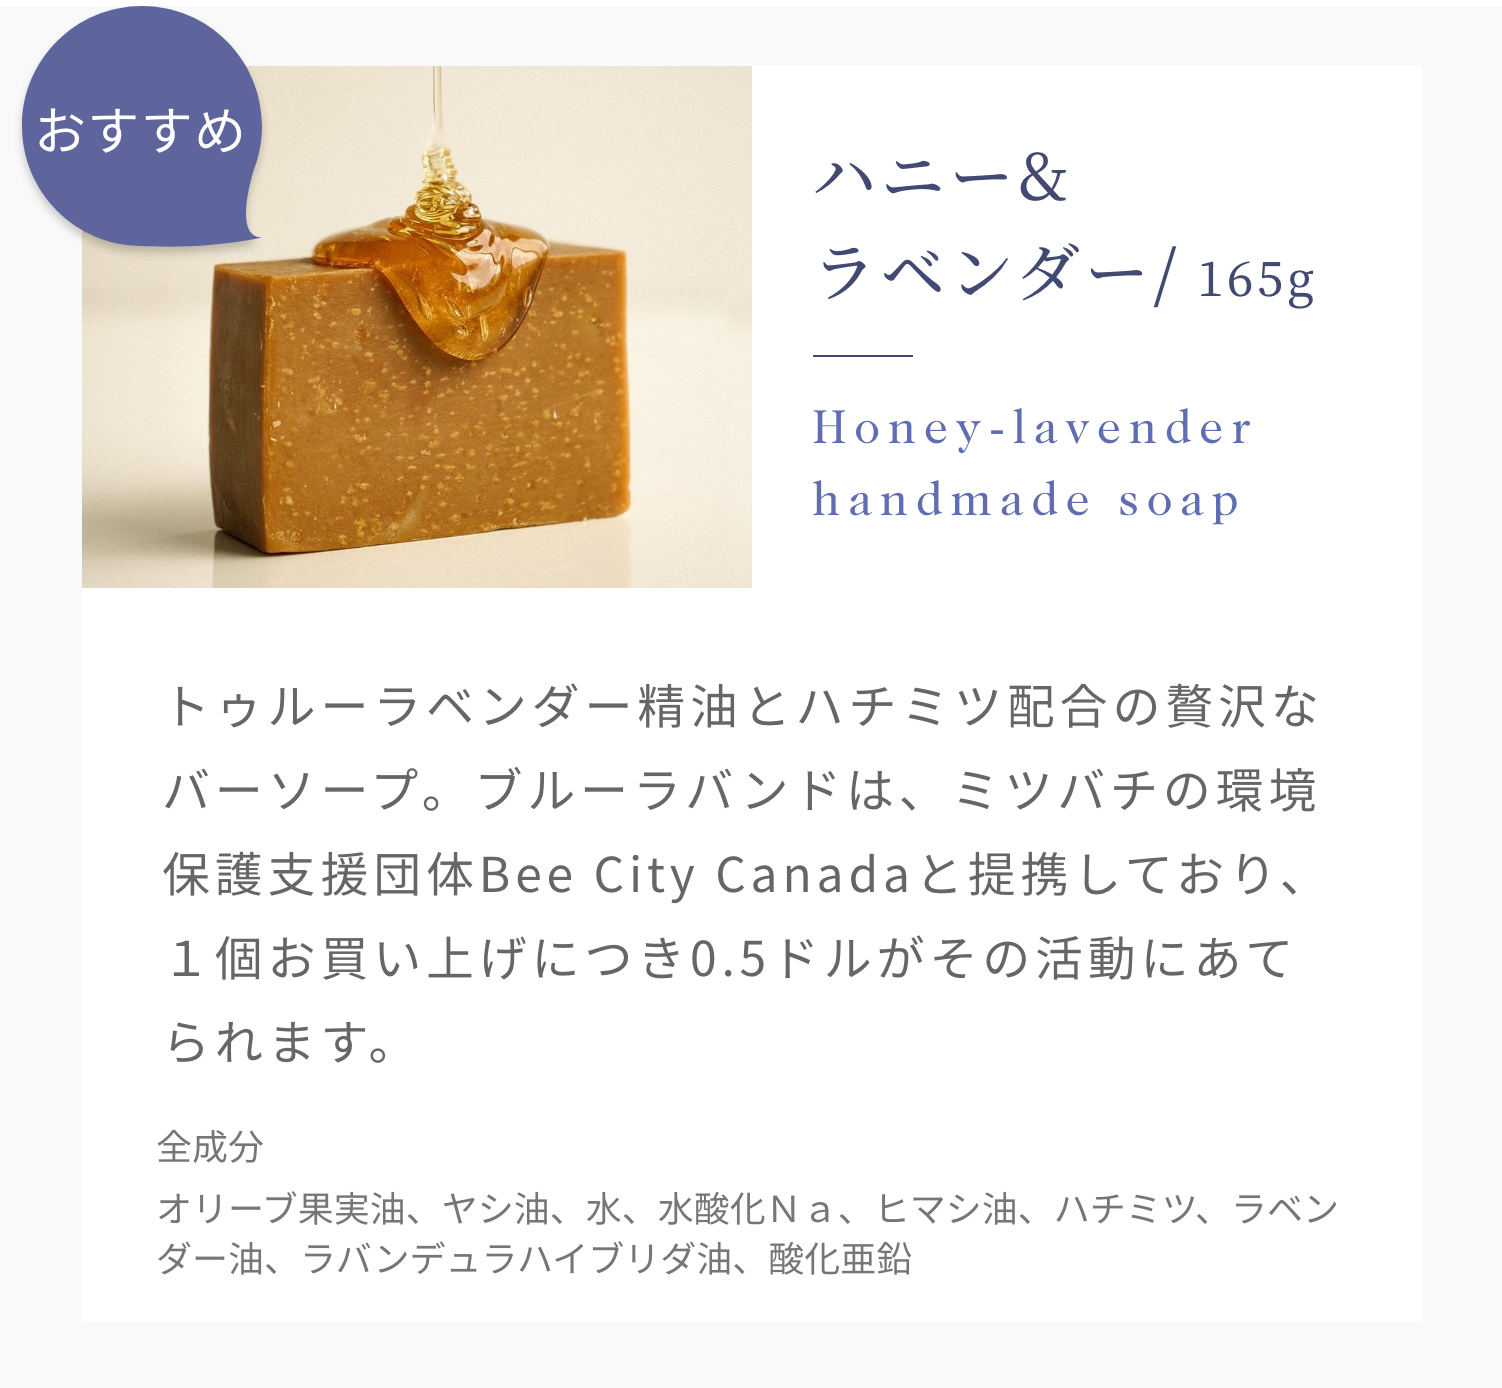 おすすめ ハニー&ラベンダー/ 165g Honey-lavender handmade soap トゥルーラベンダー精油とハチミツ配合の贅沢なバーソープ。ブルーラバンドは、ミツバチの環境保護支援団体Bee City Canadaと提携しており、１個お買い上げにつき0.5ドルがその活動にあてられます。